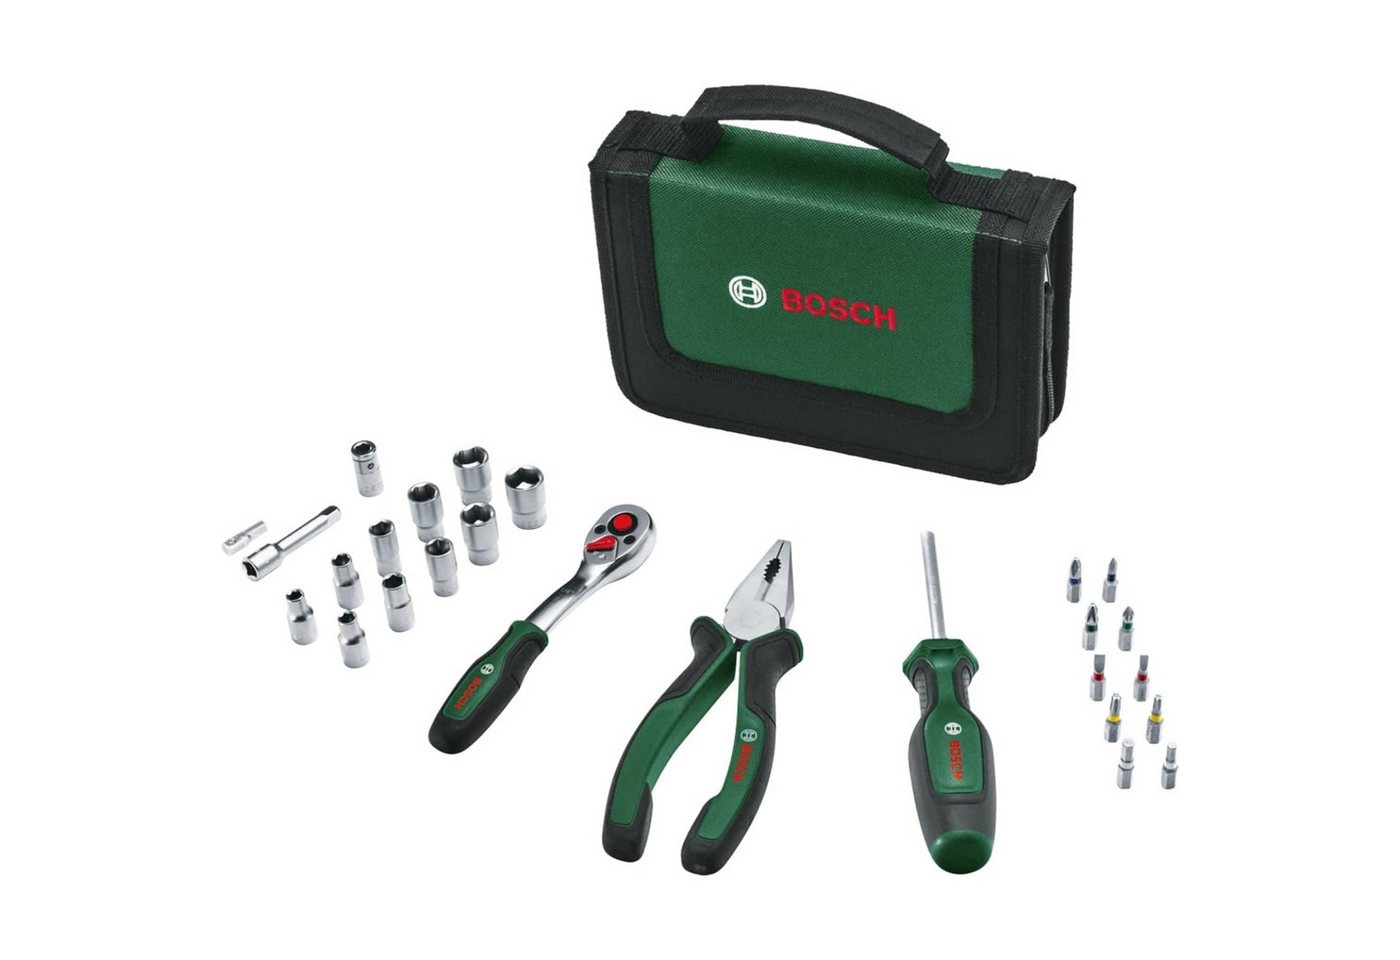 Bosch Accessories Multitool Bosch Mobility-Handwerkzeug-Set, 26-teilig (kompaktes und mobiles Werk von Bosch Accessories